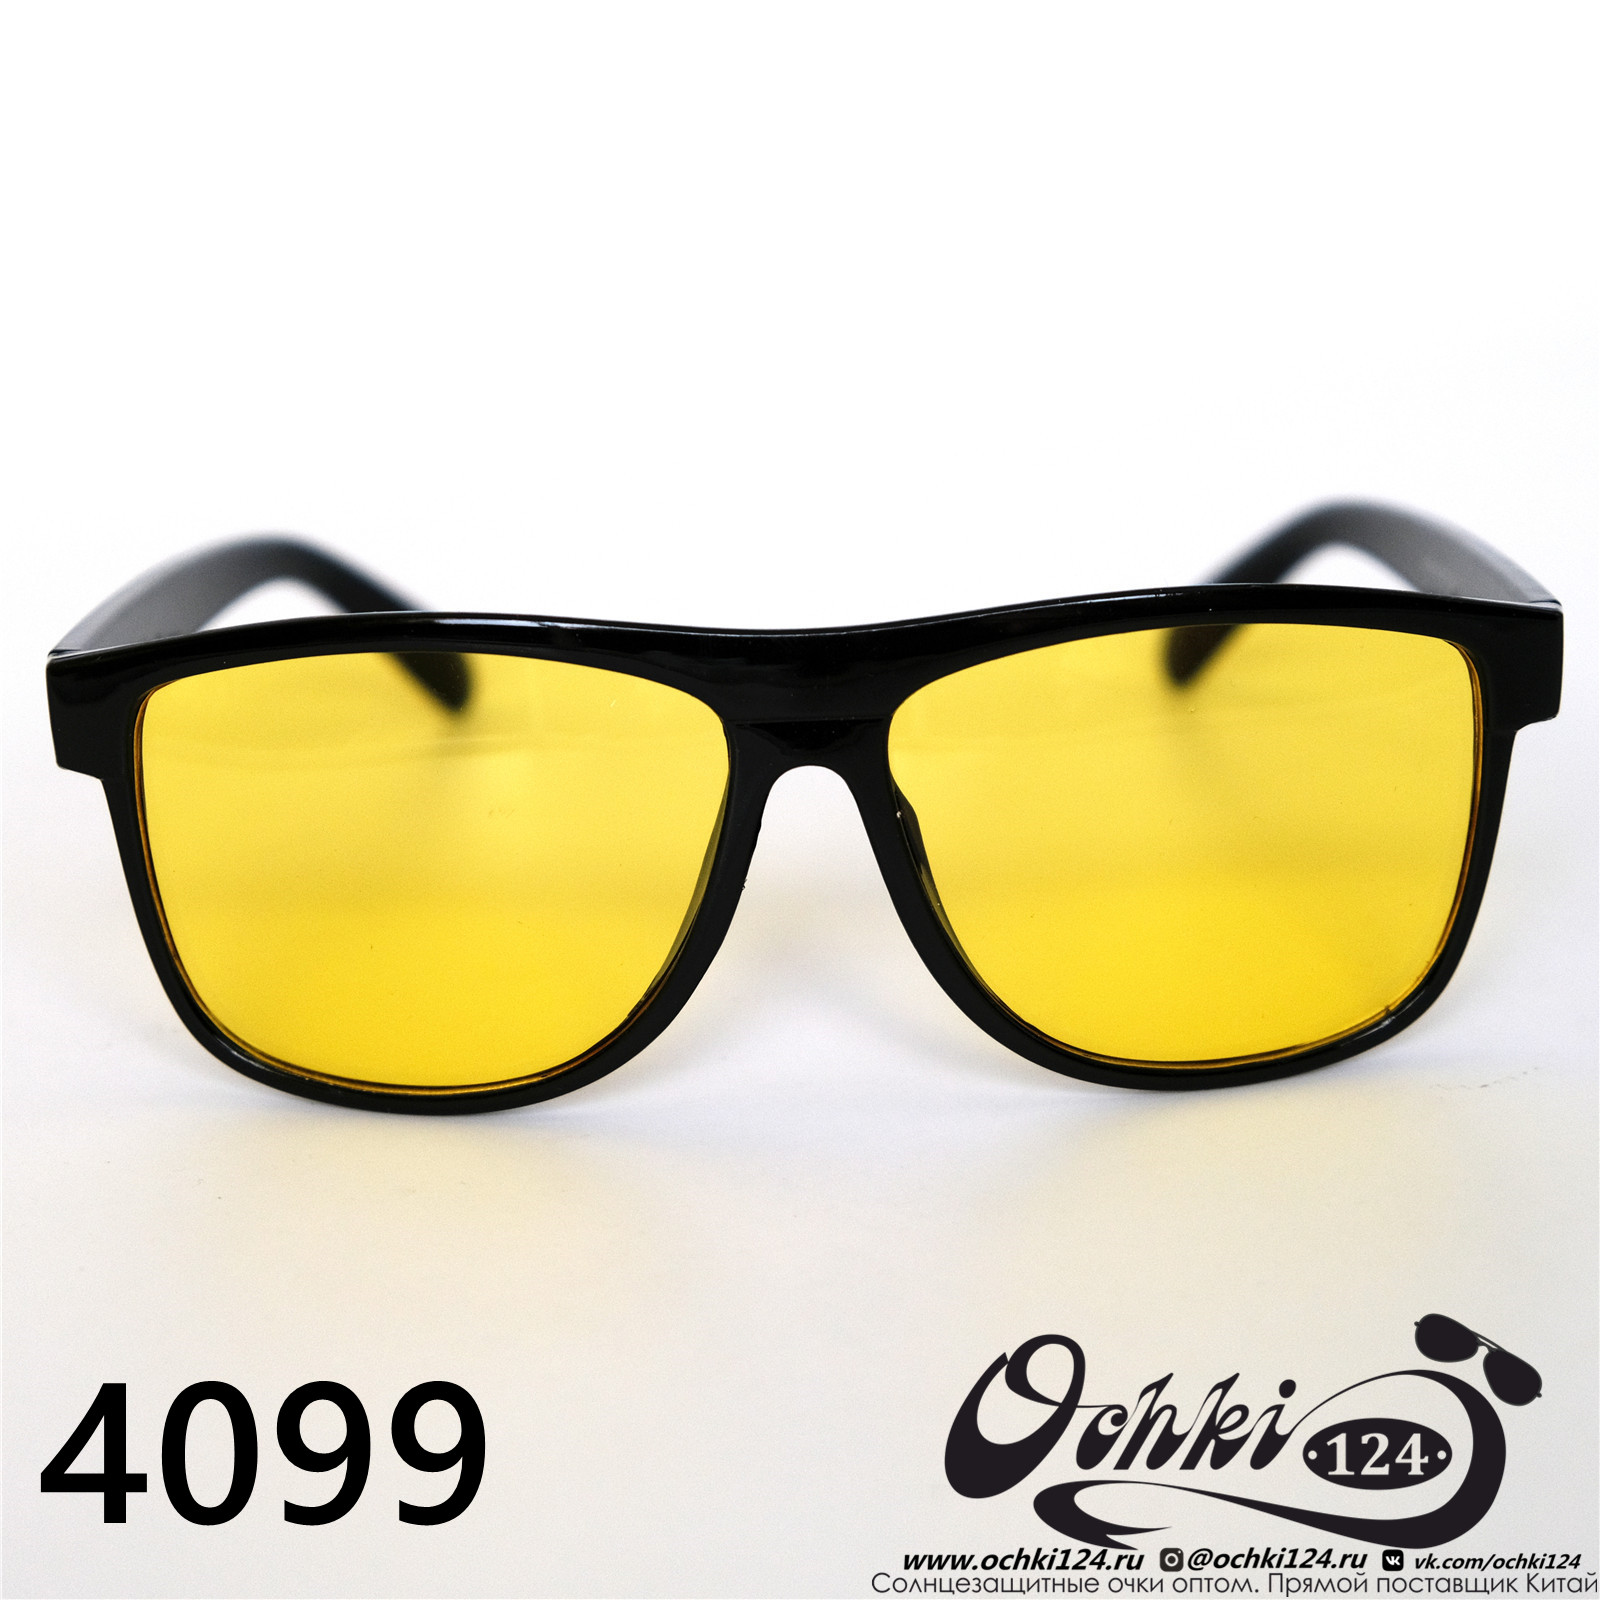  Солнцезащитные очки картинка 2022 Мужские Стандартные Materice 4099-8 